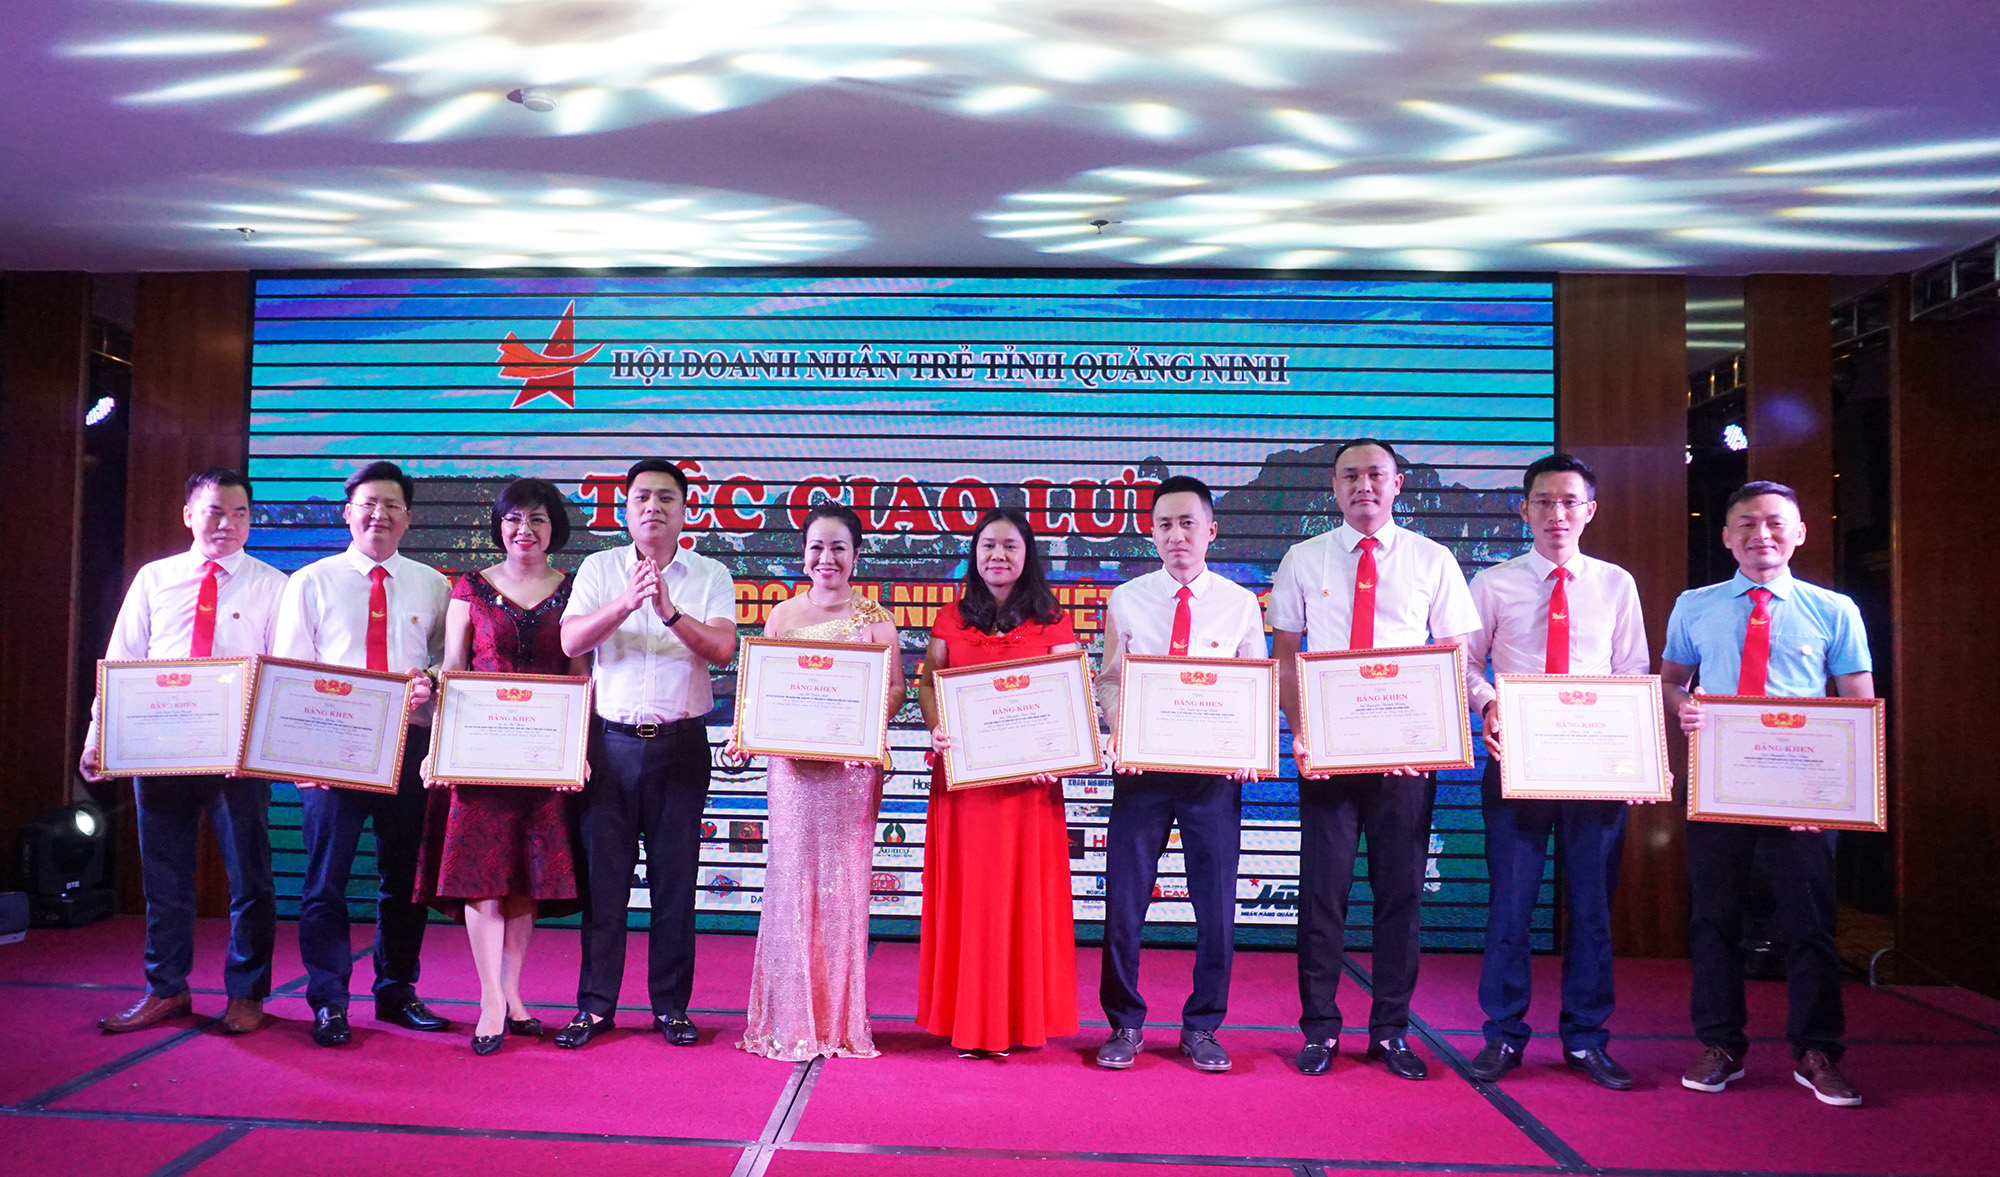 Nhân dịp nay, nhiều doanh nhân trẻ đã được nhận bằng khen của Trung ương Hội Liên hiệp thanh niên Việt Nam, TW Hội doanh nhân trẻ Việt Nam.